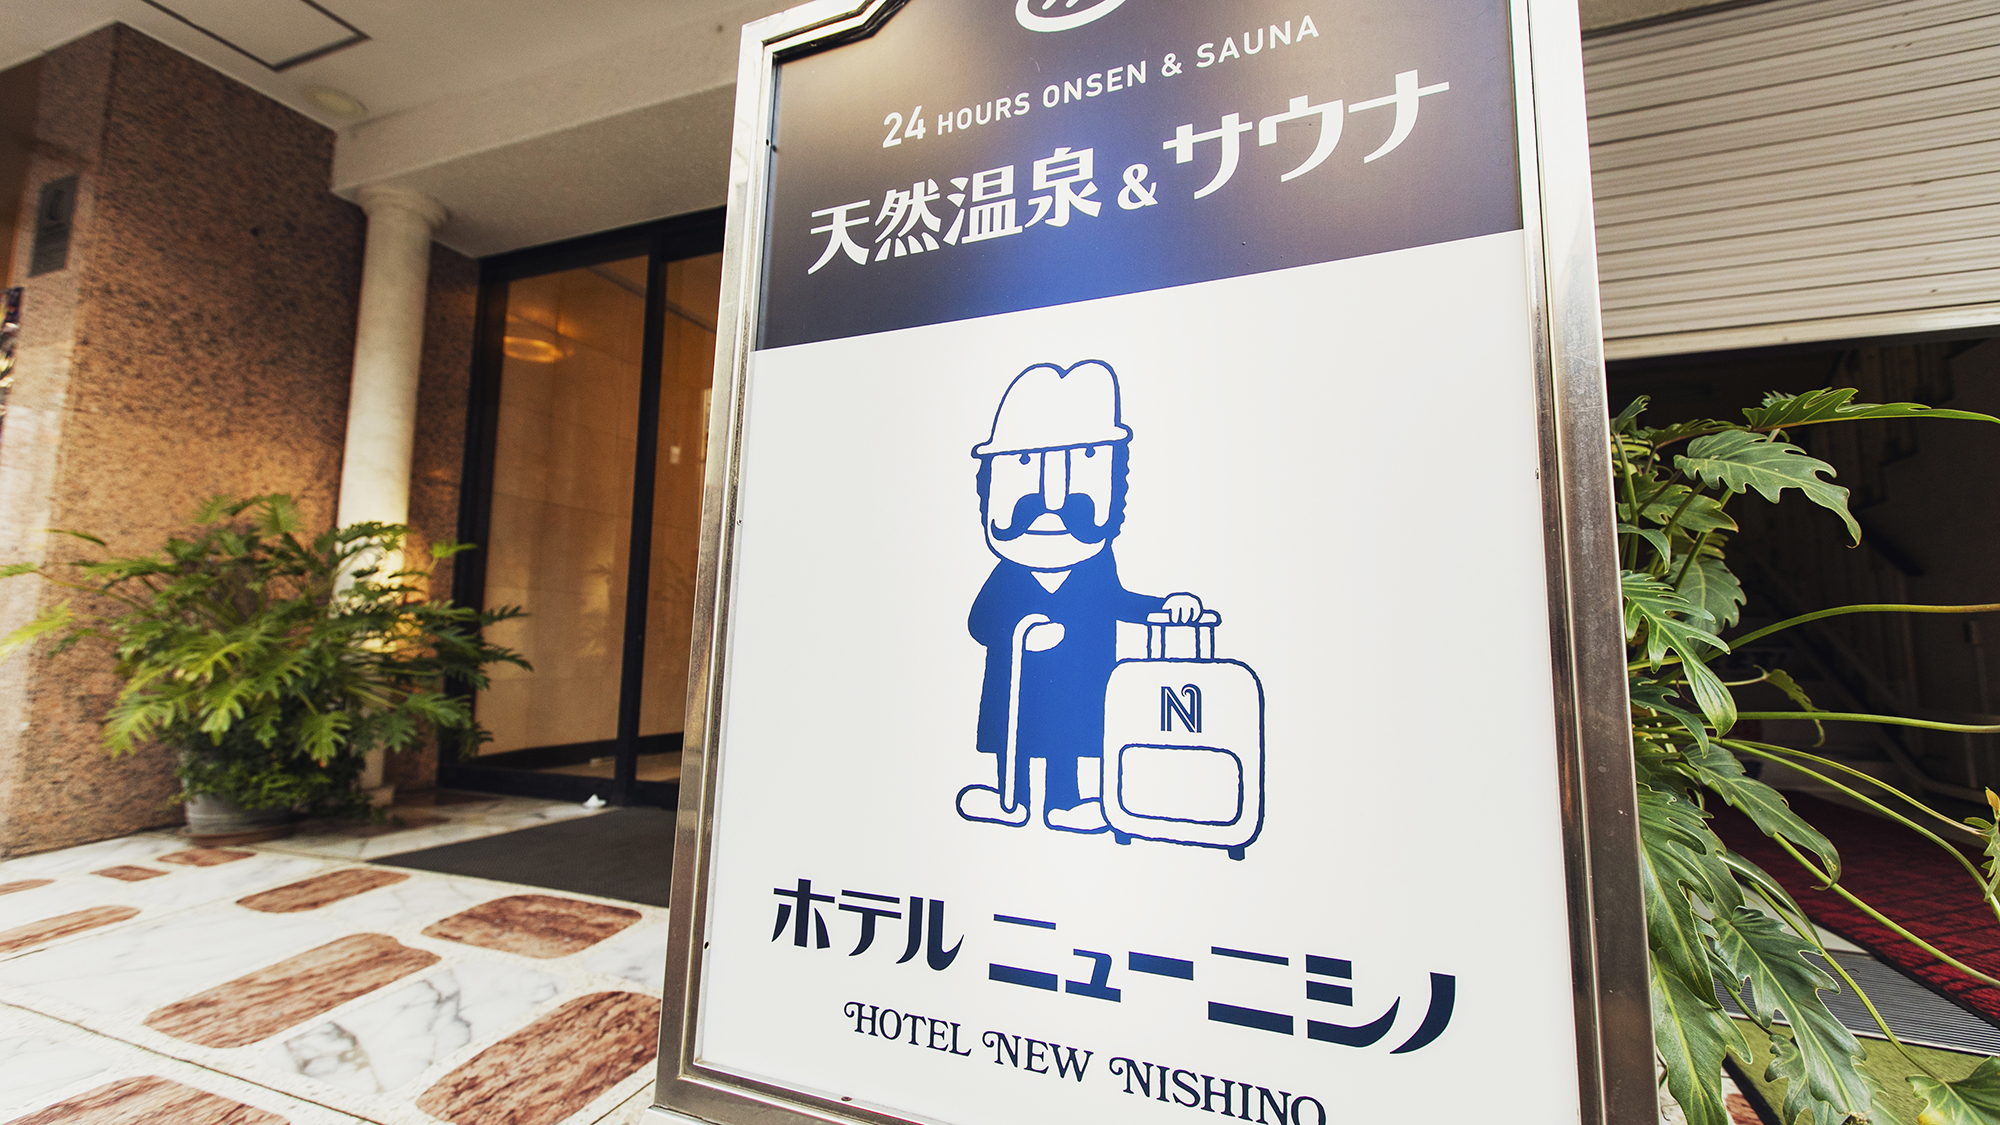 ホテルニューニシノの看板キャラクター「ニシノさん」。館内にはグッズも販売しております。